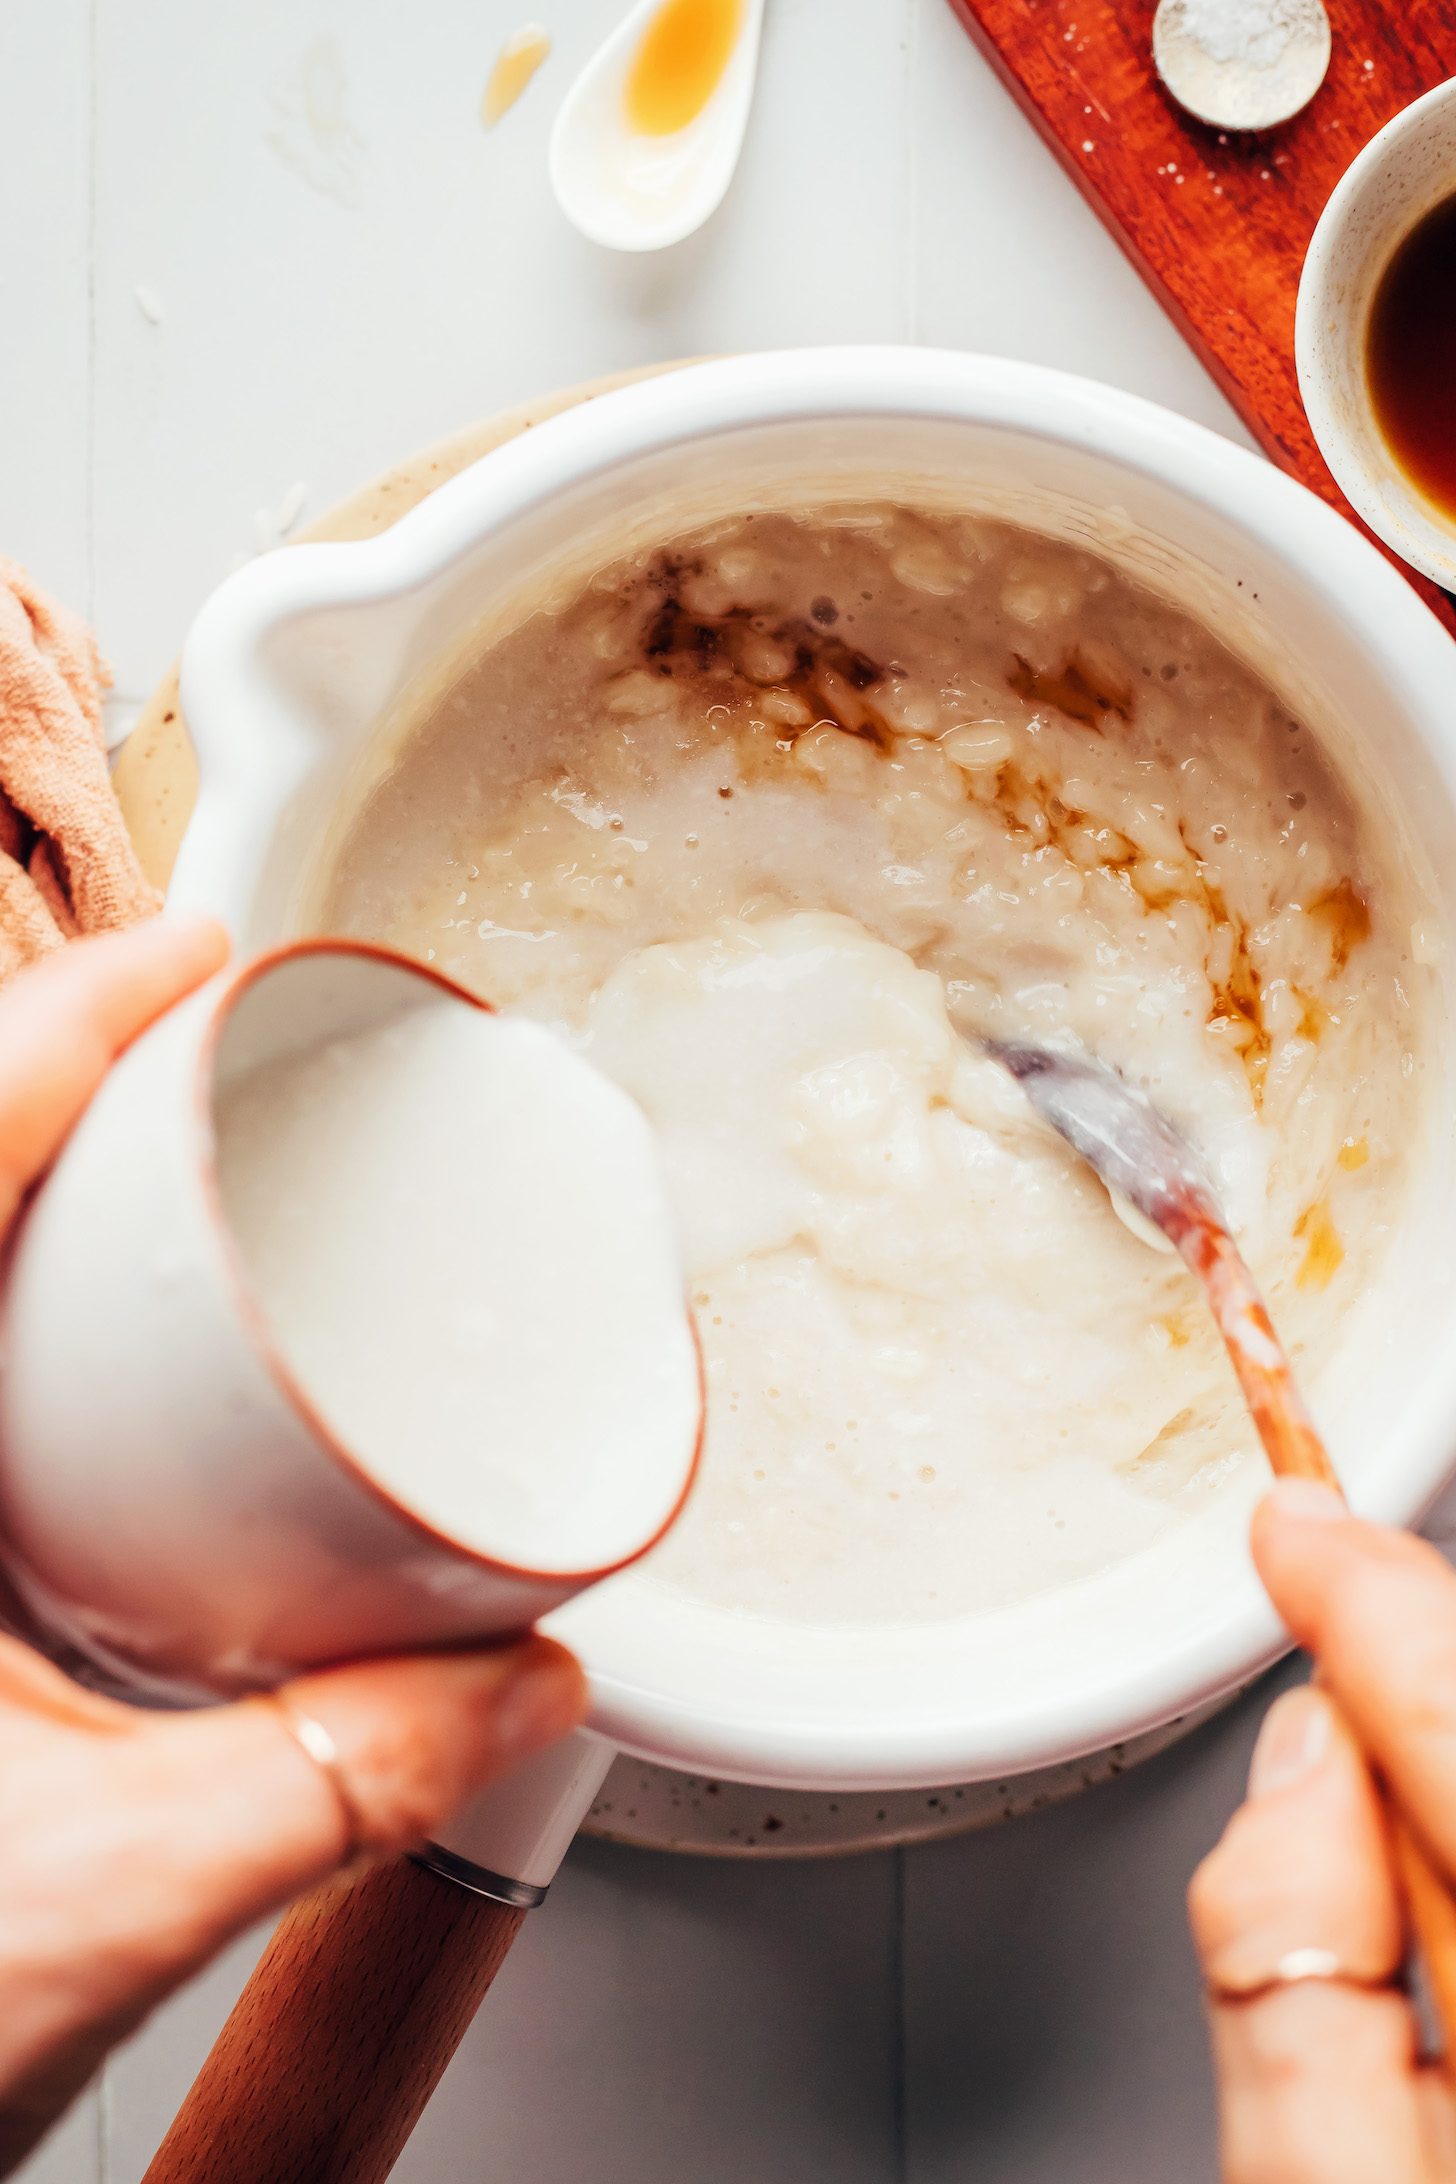 Наливаем кокосовое молоко в кастрюлю с кленовым сиропом, ванилью, миндальным молоком и приготовленным белым рисом.